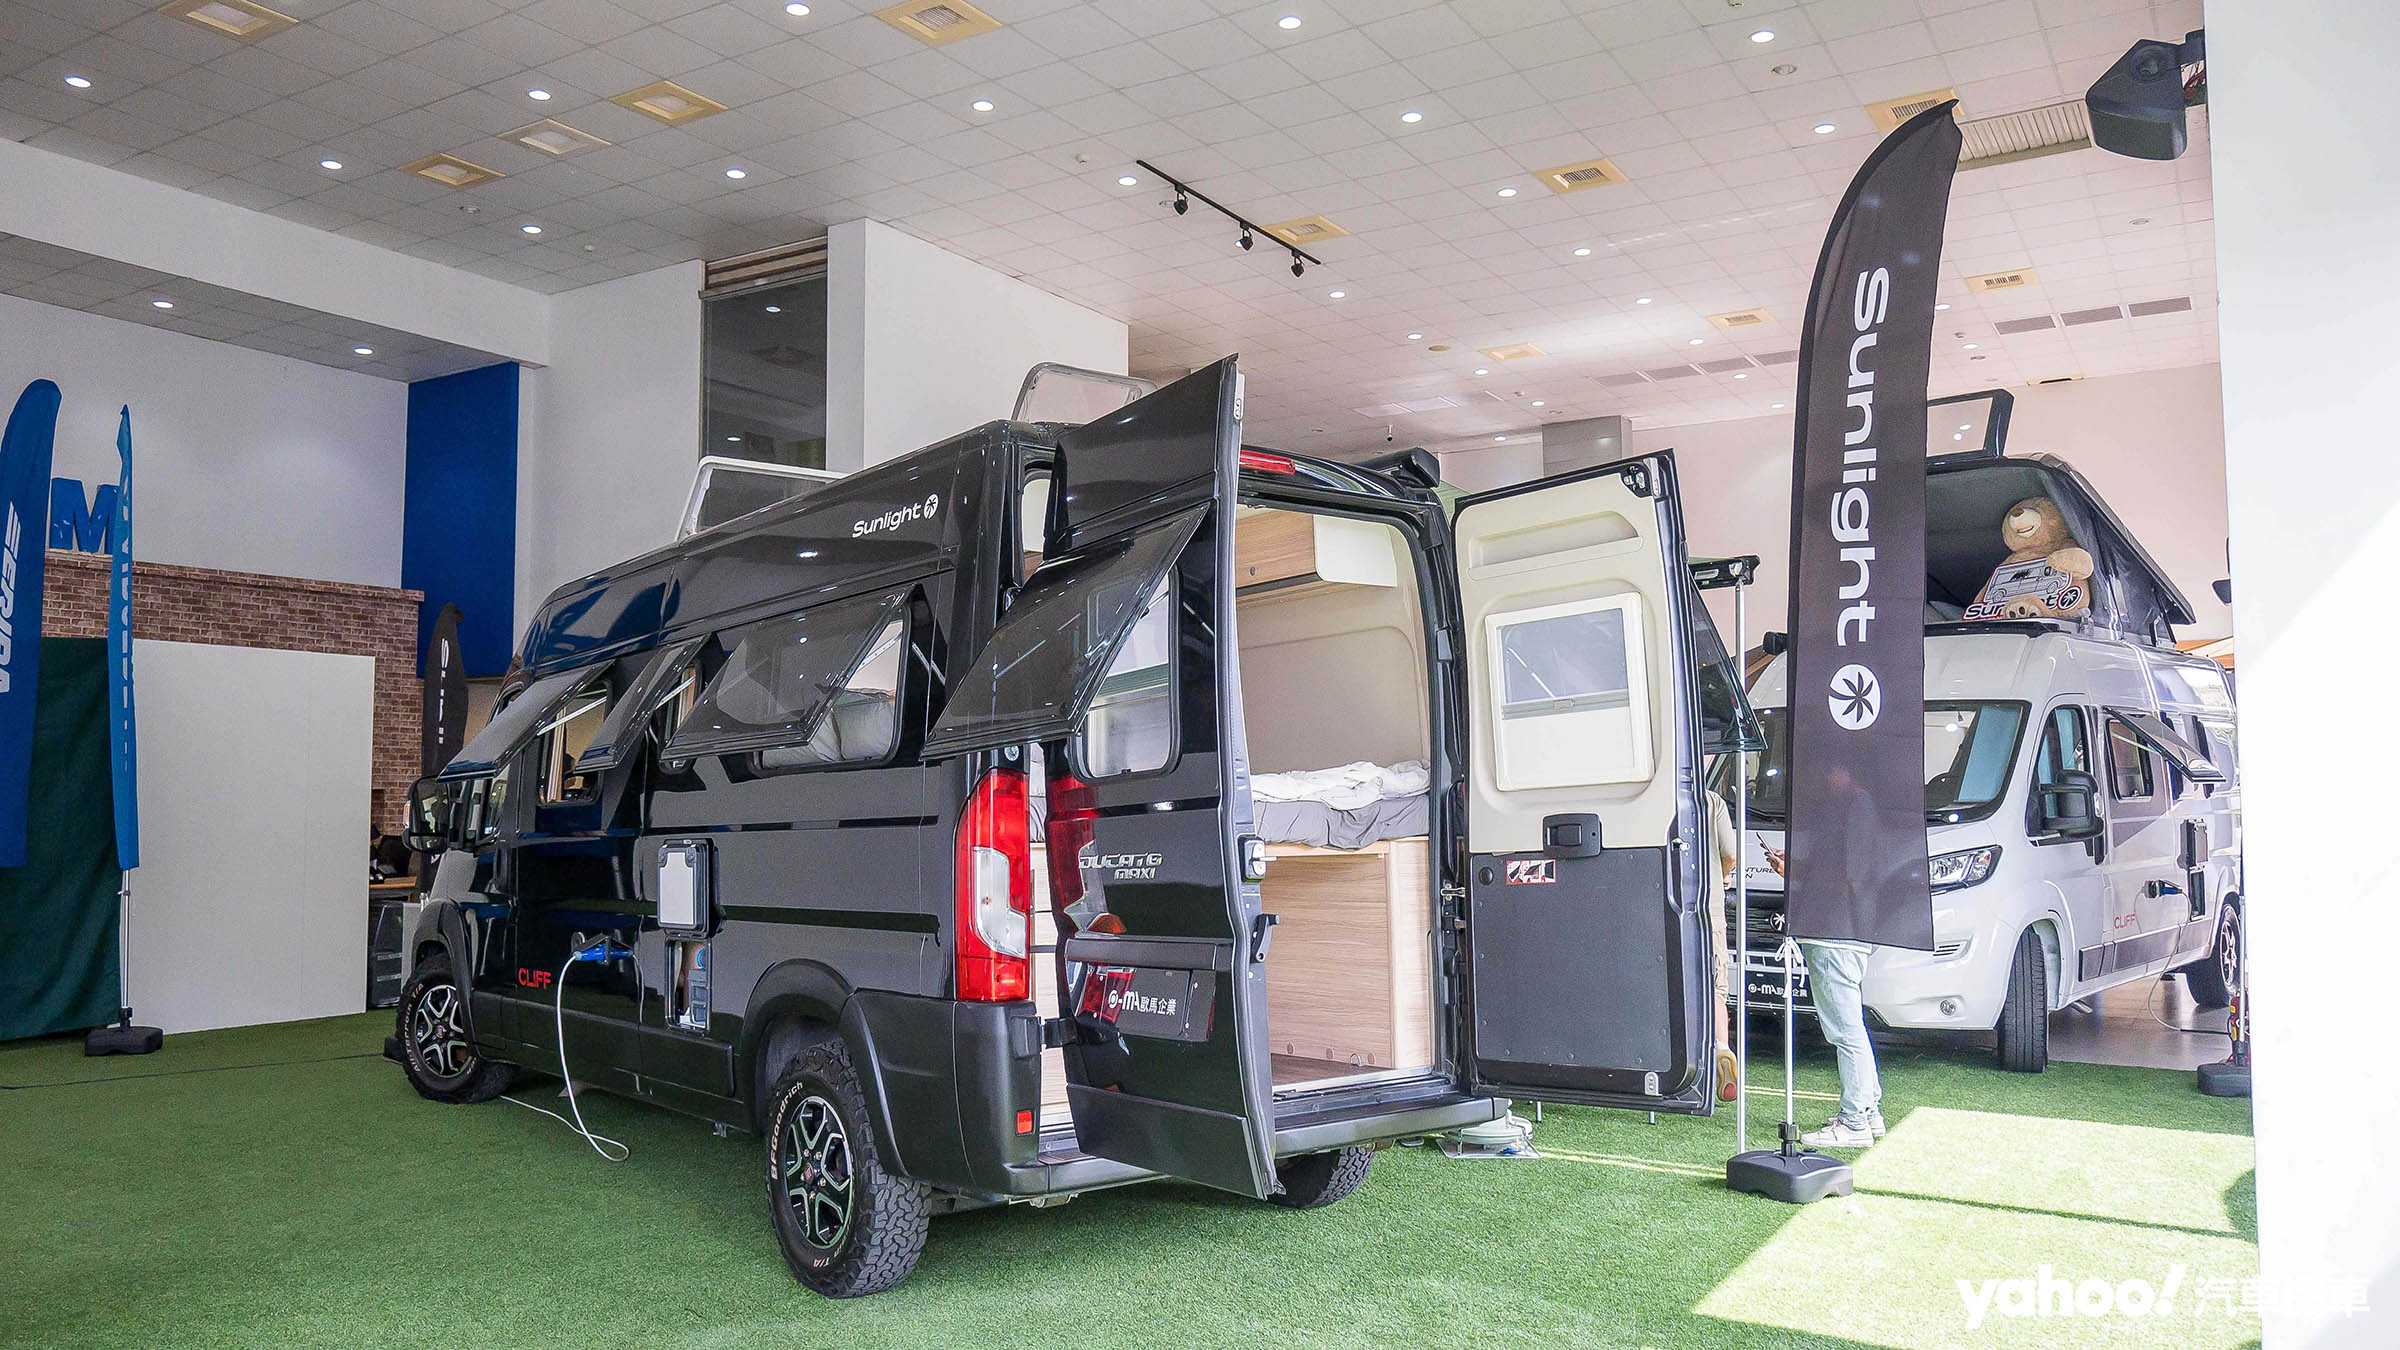 歐馬成立露營車出租部門「九歐旅行家」，讓民眾能以租車方式享受走到哪、玩到哪、睡到哪的車宿趣味。